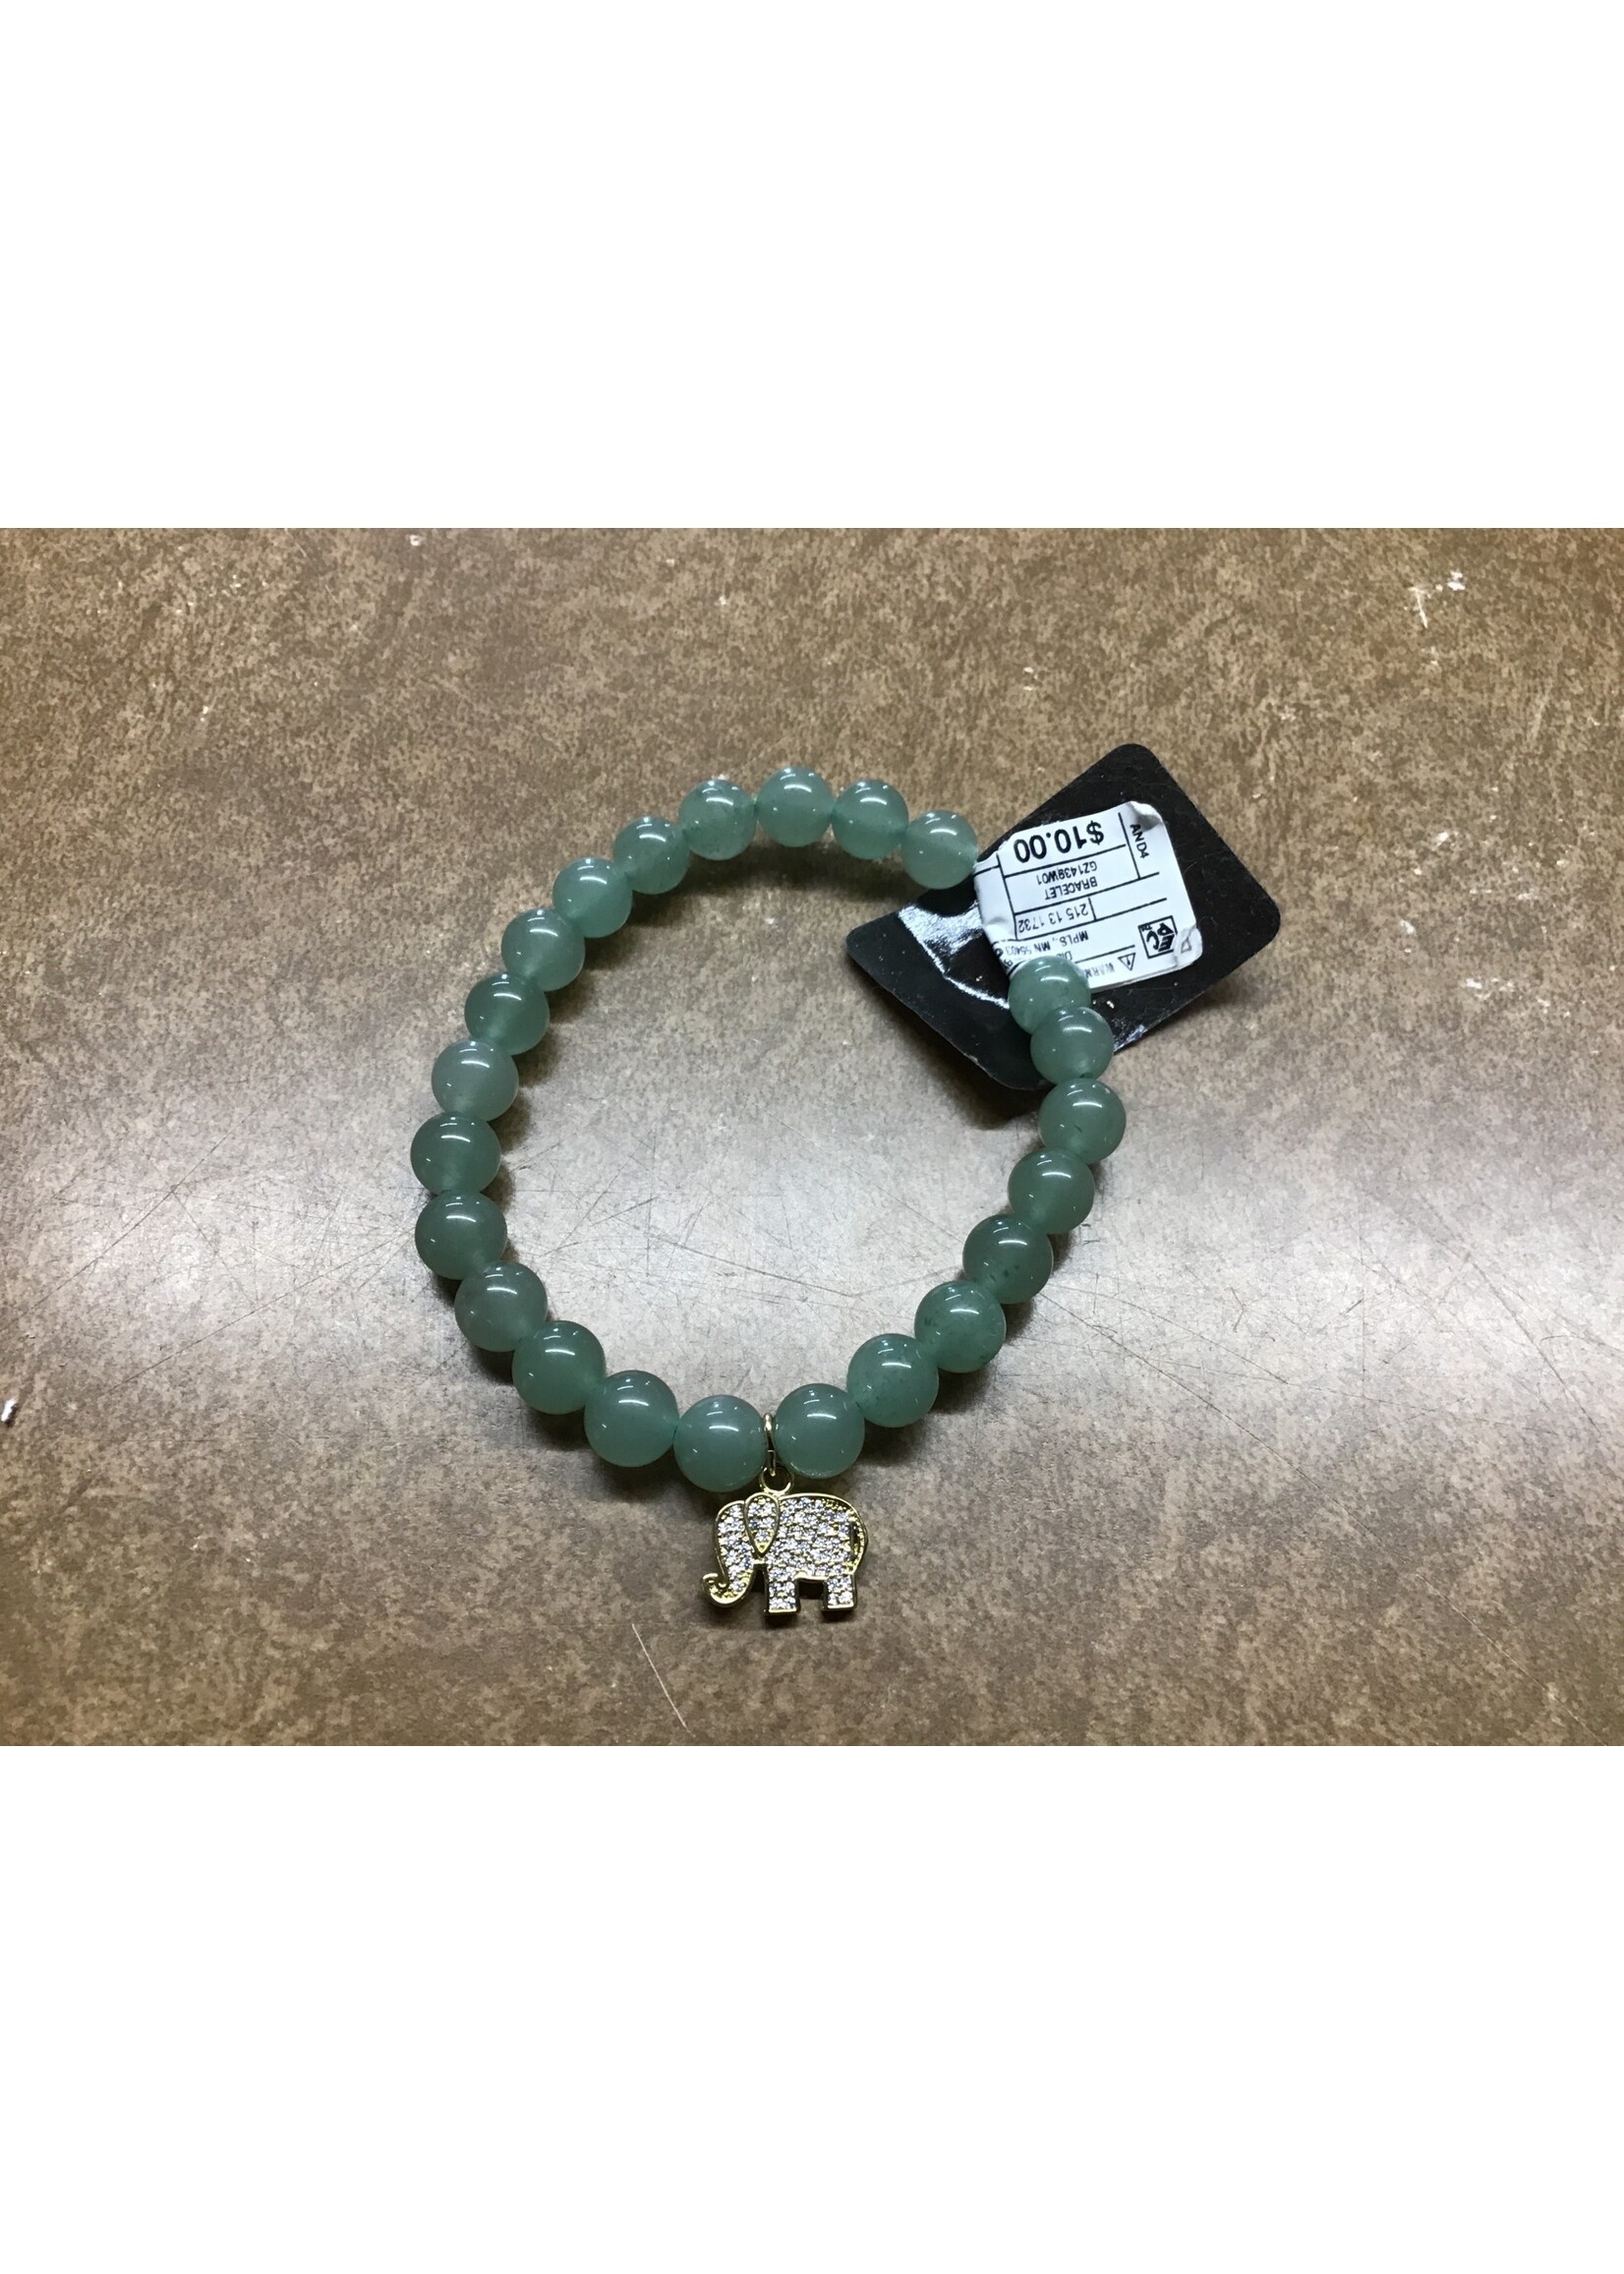 Semi-precious bead stretch bracelet with elephant charm